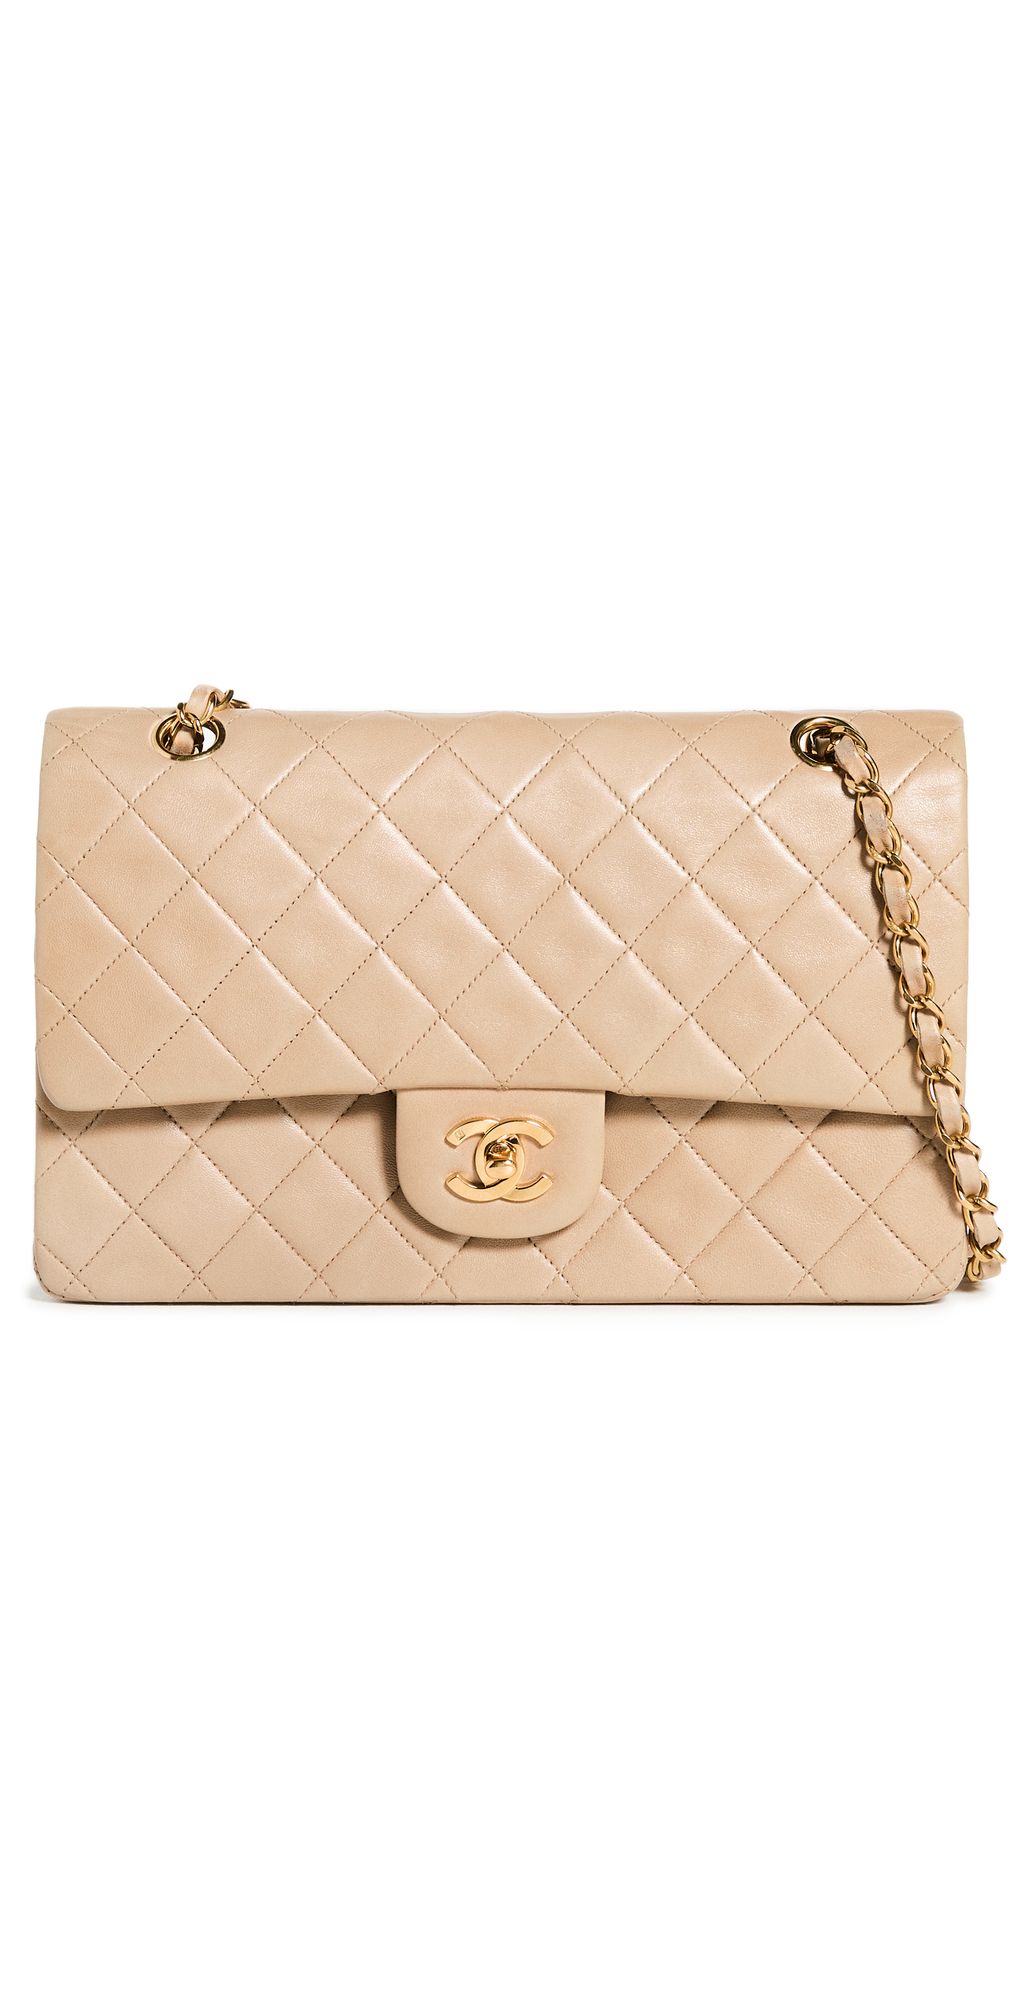 Chanel Beige Fold Over Bag | Shopbop